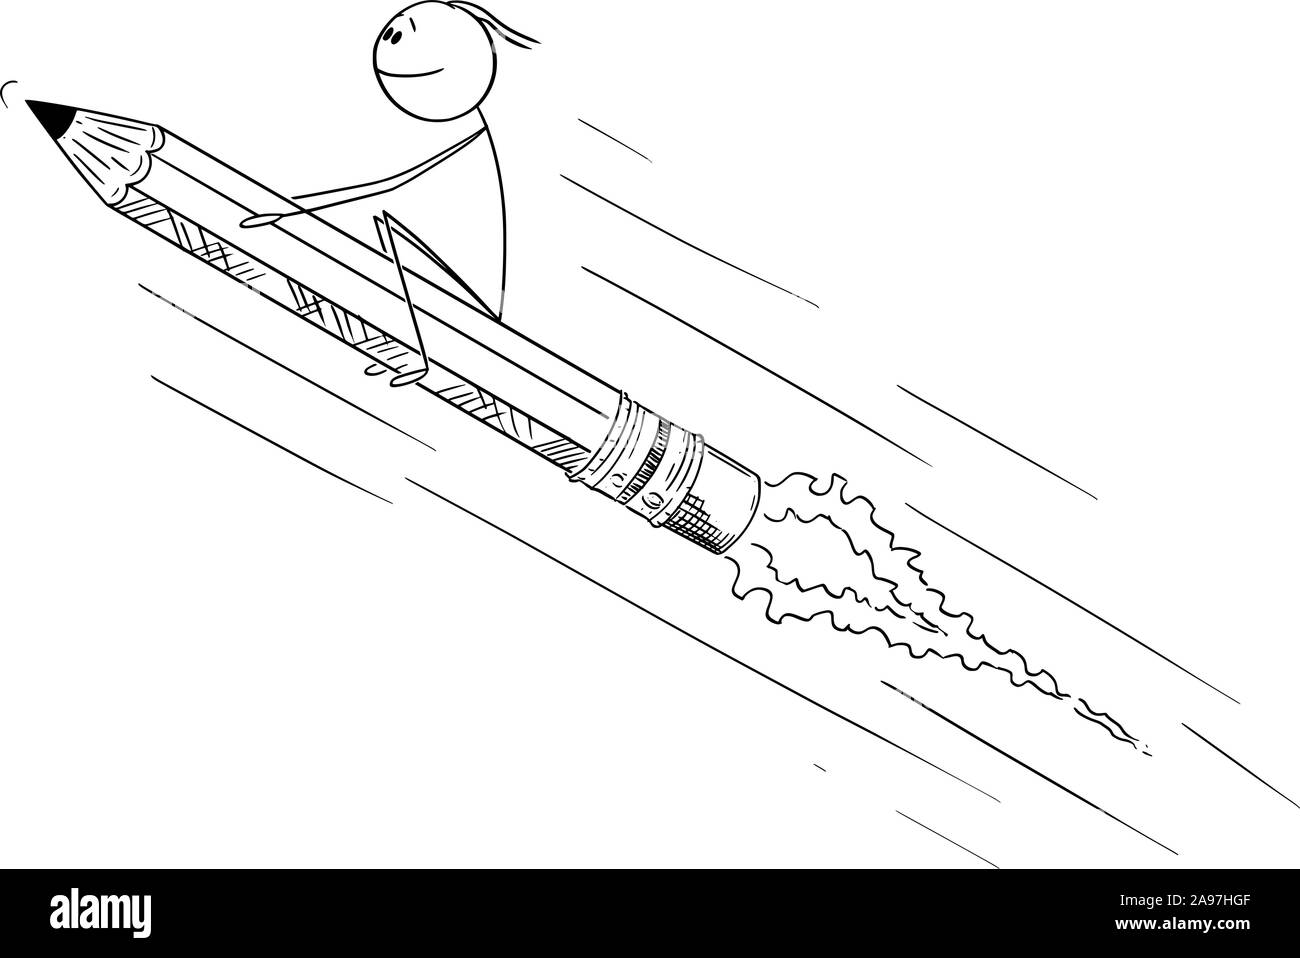 Vektor cartoon Strichmännchen Zeichnen konzeptionelle Darstellung der Mann oder Geschäftsmann sitzen auf Bleistift Rakete. Kreative Ideen und Kreativität. Stock Vektor